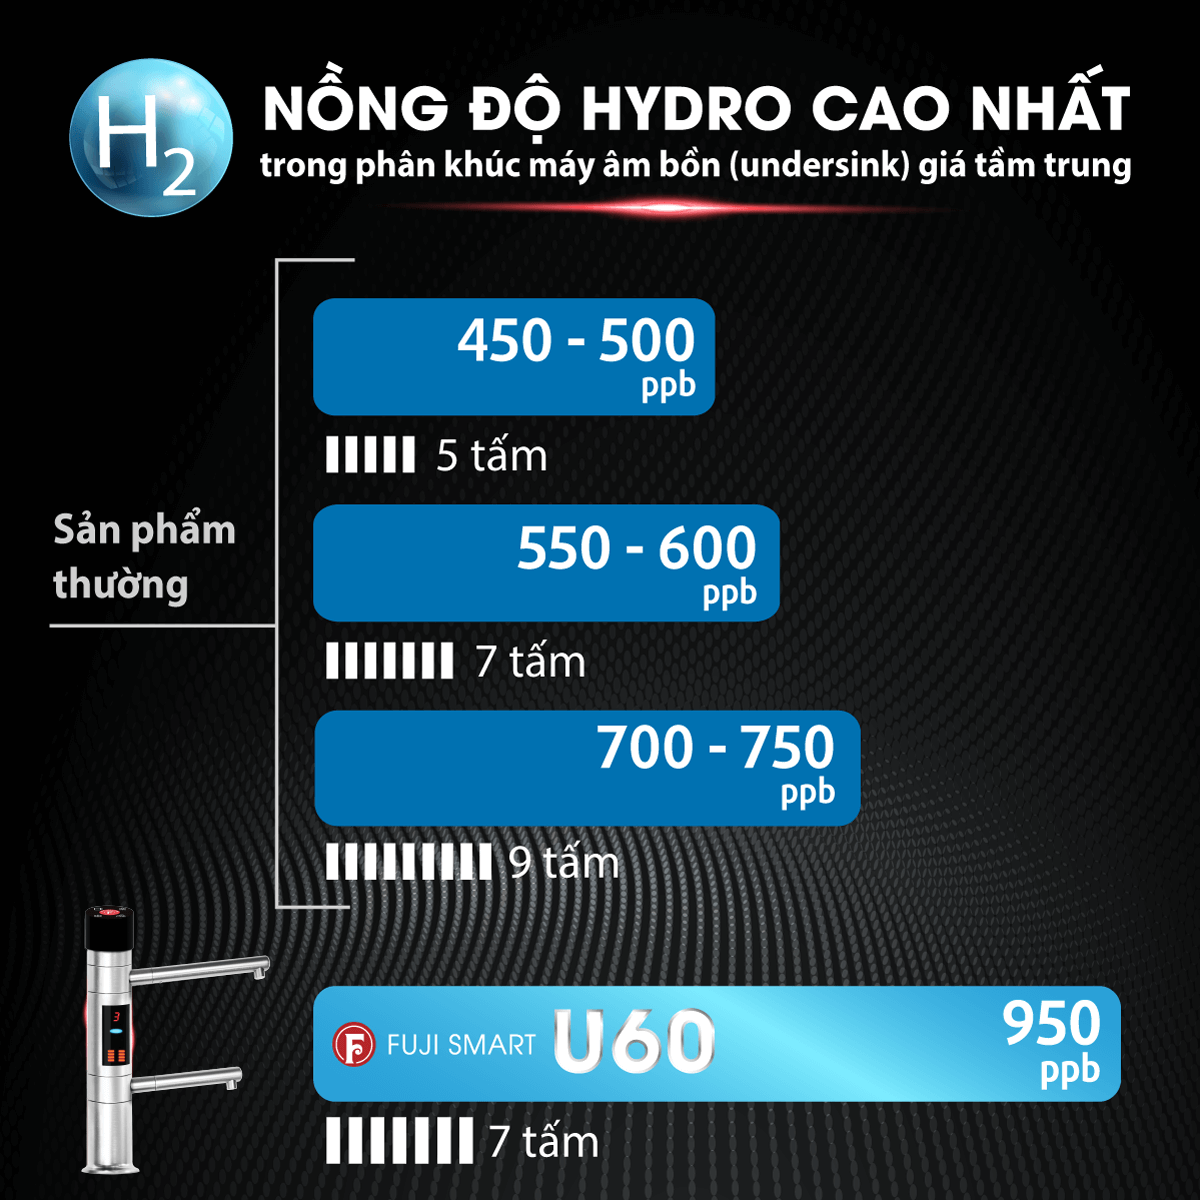 Máy lọc nước iON kiềm Fuji Smart U60 tạo nước ion kiềm có nồng độ hydrogen bao nhiêu?